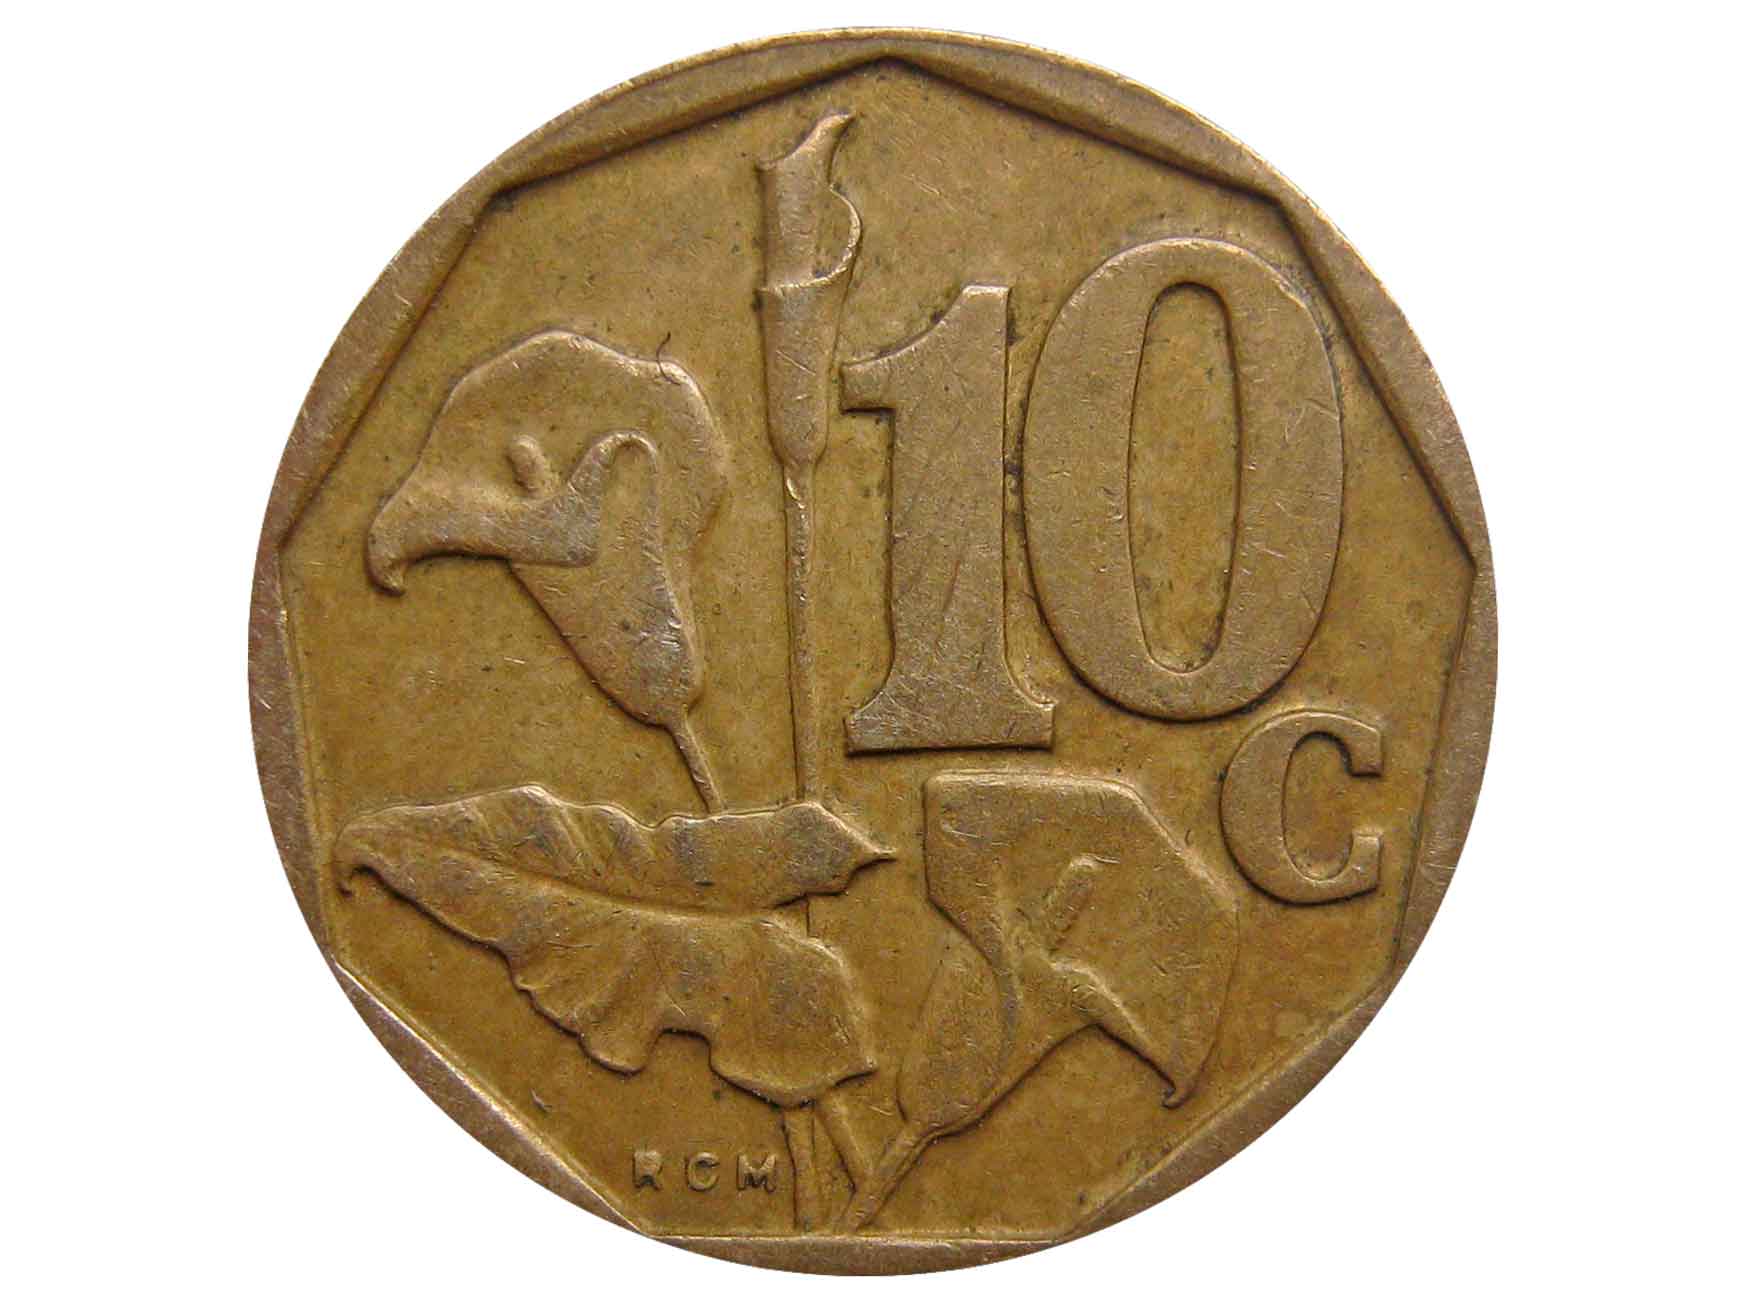 Africa 10. 10 Центов. Монета 20 центов ЮАР 1997. Почтовая марка ЮАР 10 центов. 10 Центов с колосками.